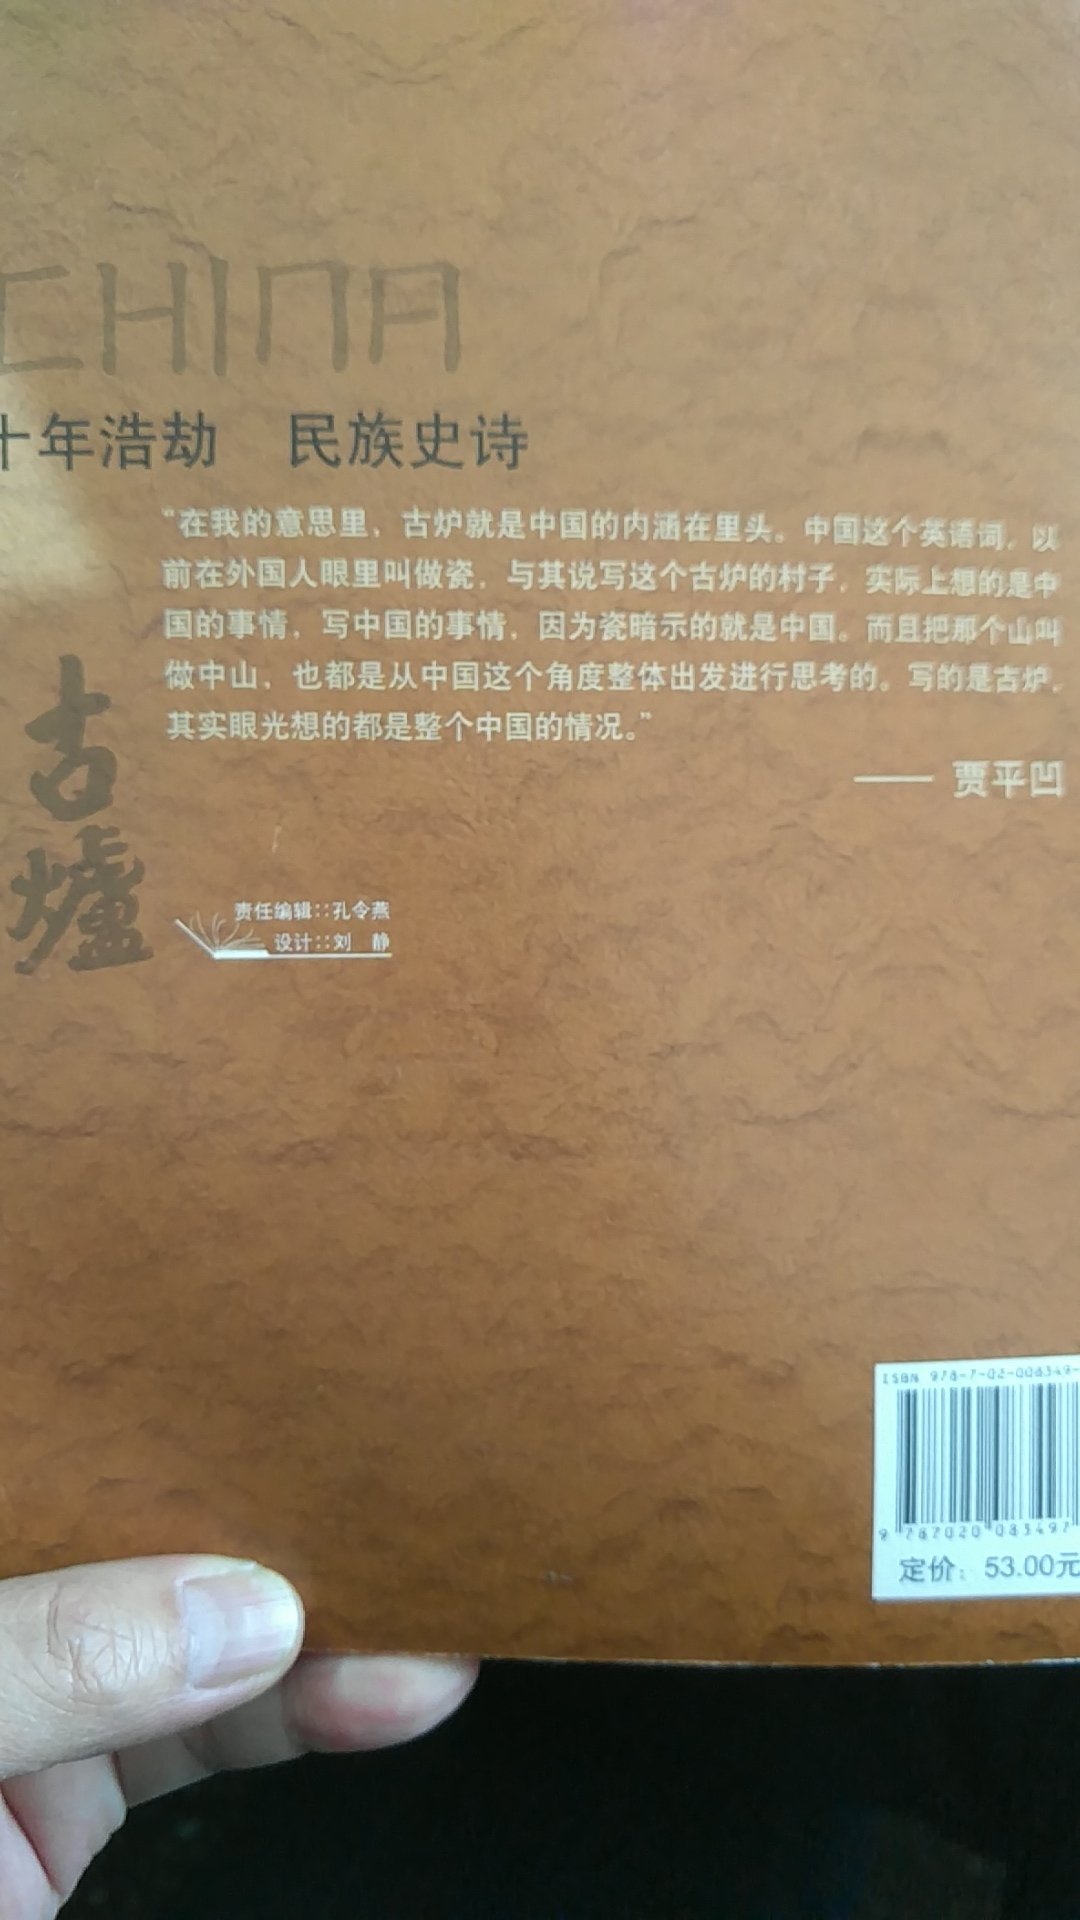 真实的生活细节，浑然一体的陕西风情，展示中国基层“**”的历史轨迹，人文解读历史大浩劫。